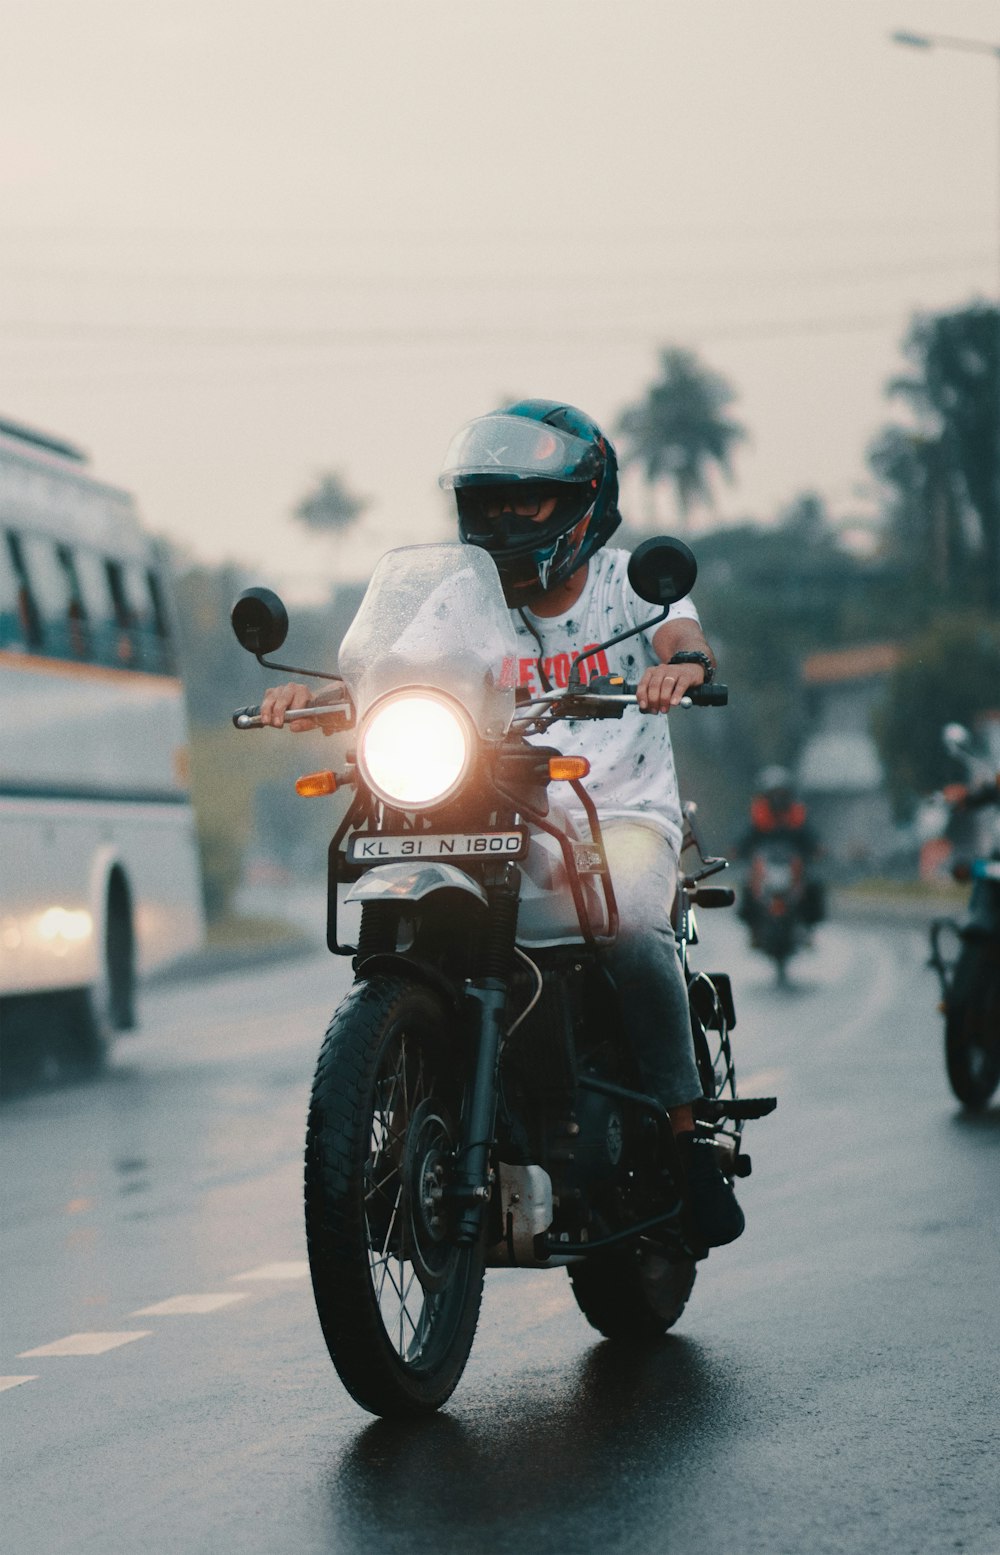 Un uomo che guida una moto lungo una strada vicino a un autobus